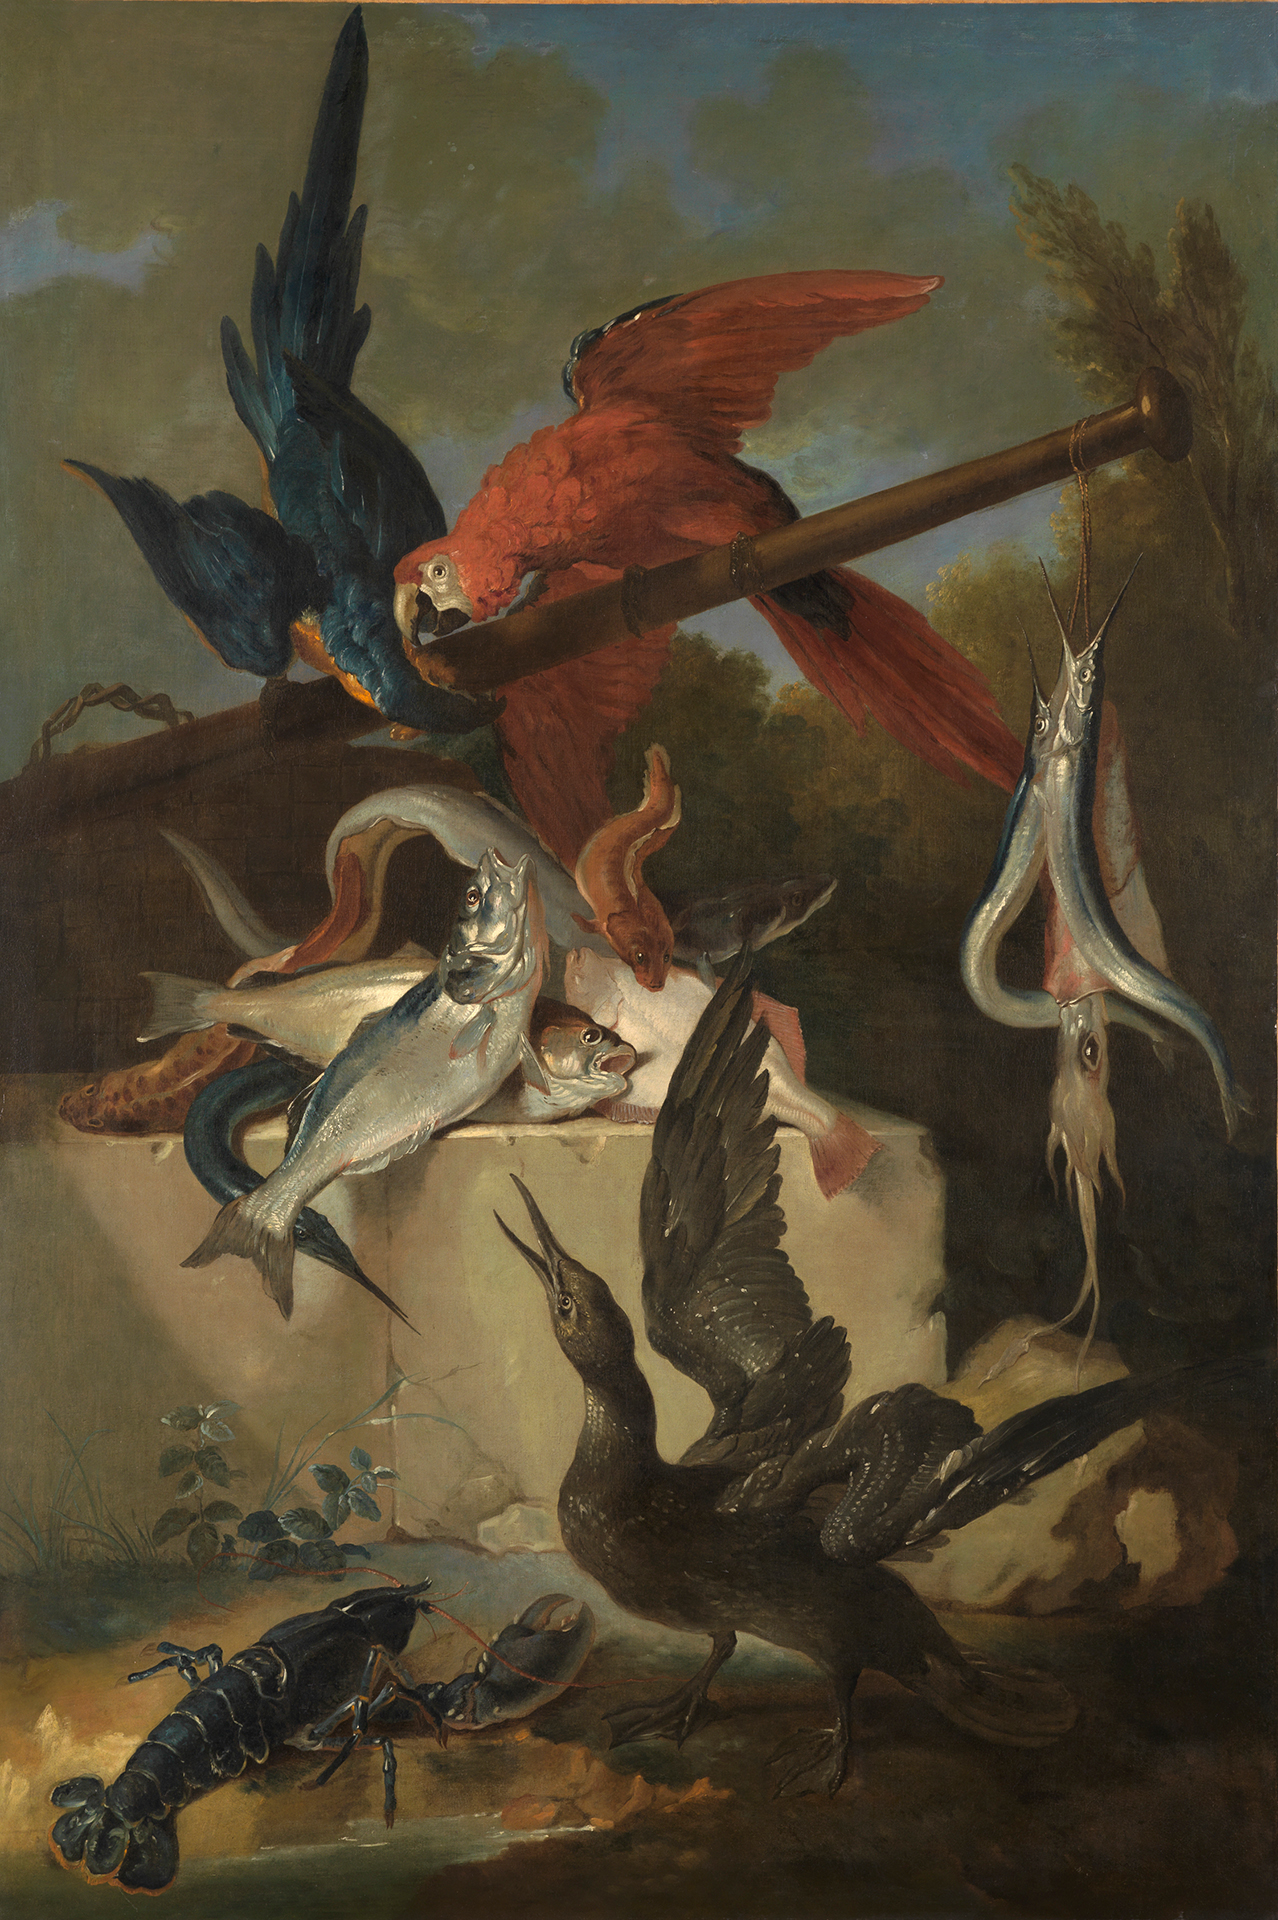 Gemälde von Jean-Baptiste Oudry, das Papageien, Seevögel und Fische zeigt